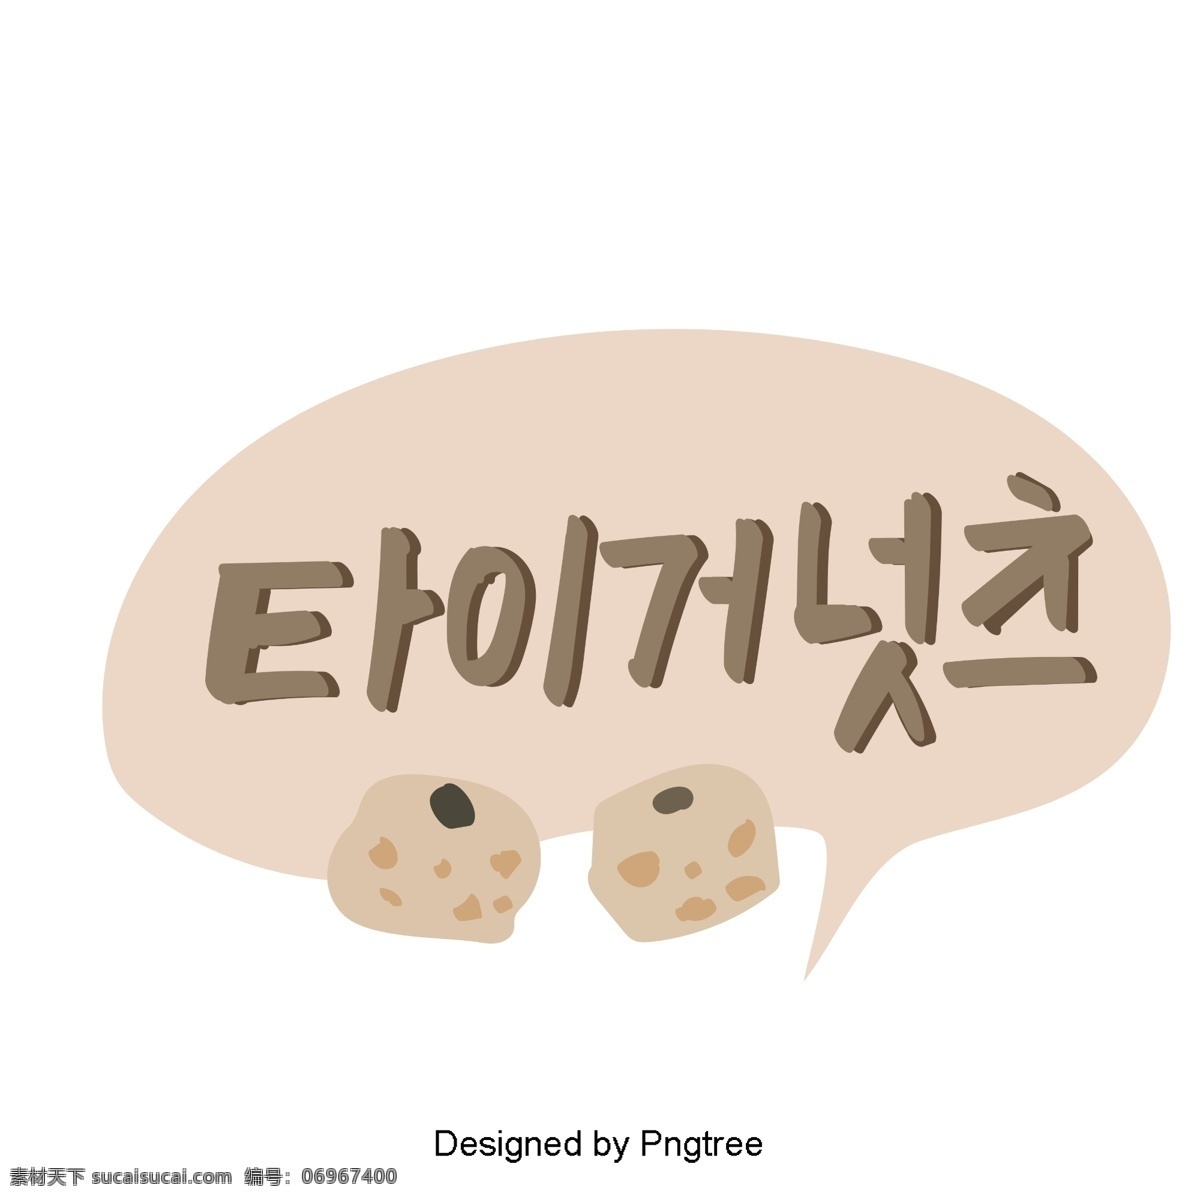 韩国 老虎 坚果 纸 上 三个 元素 在手 写字 体 样式 动画片 可爱 字形 手写 移动支付方式 韩文 棕色 水果 背部螺母